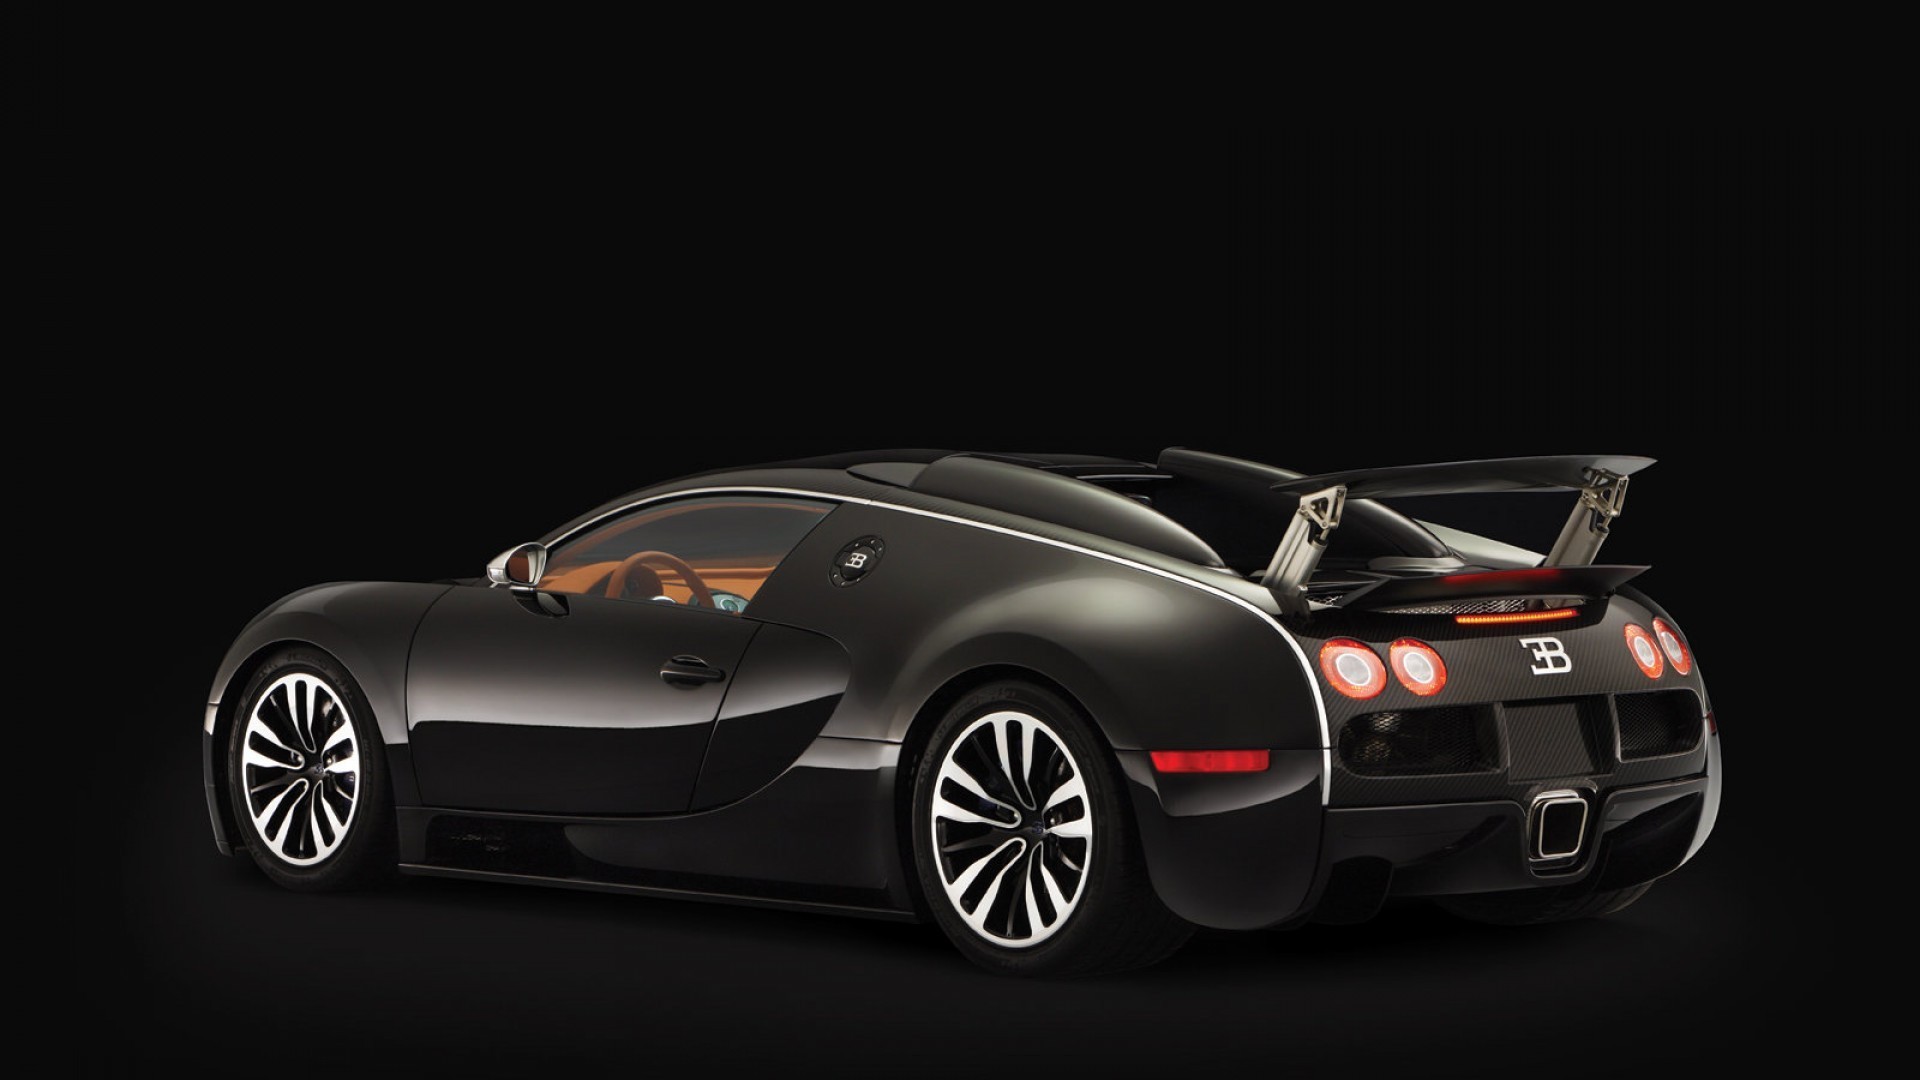 General 1920x1080 Bugatti Veyron Bugatti car vehicle black cars